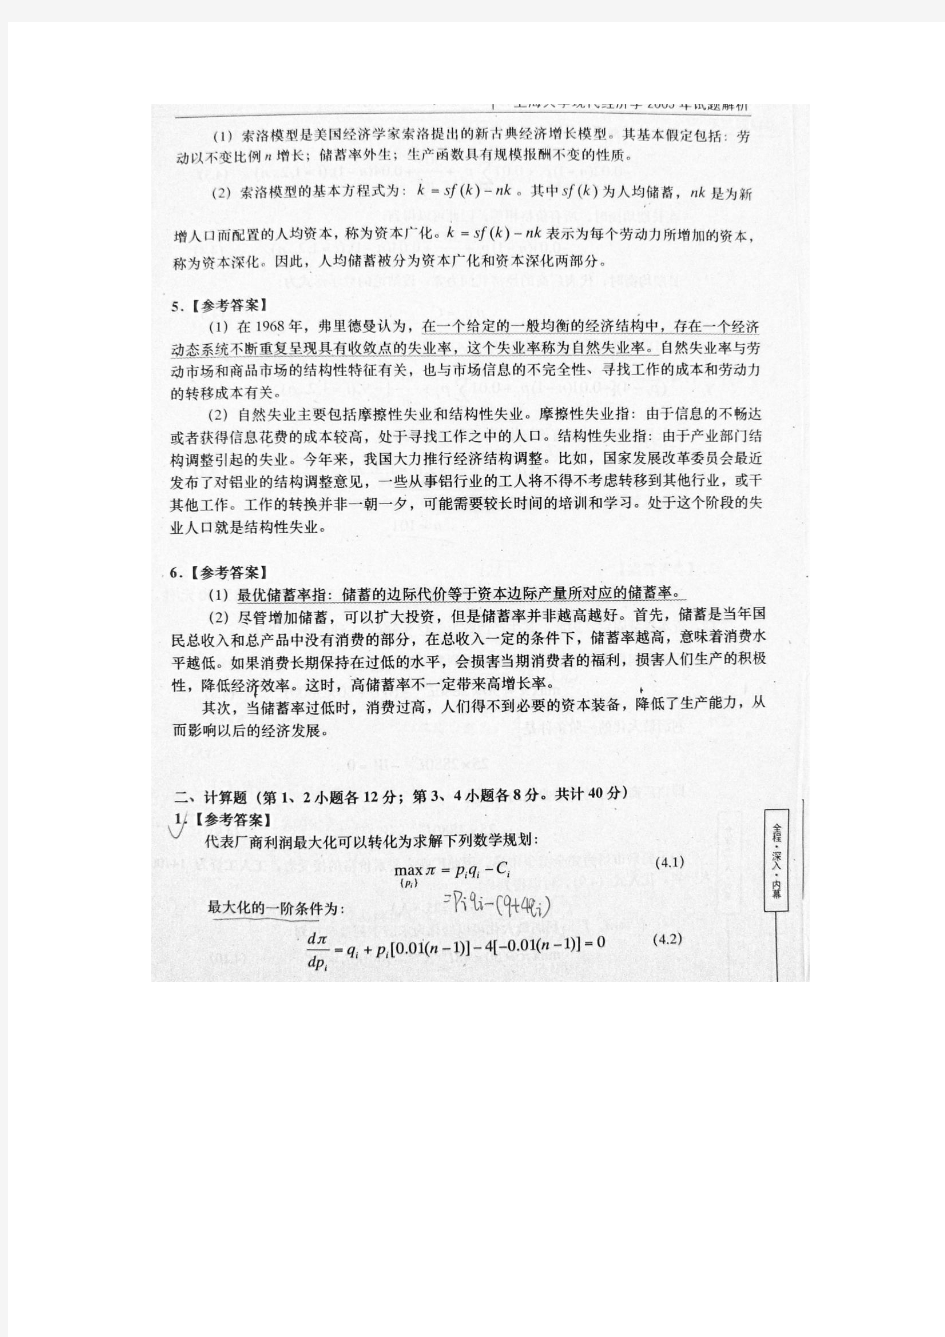 上海大学考研真题(2005年现代经济学)